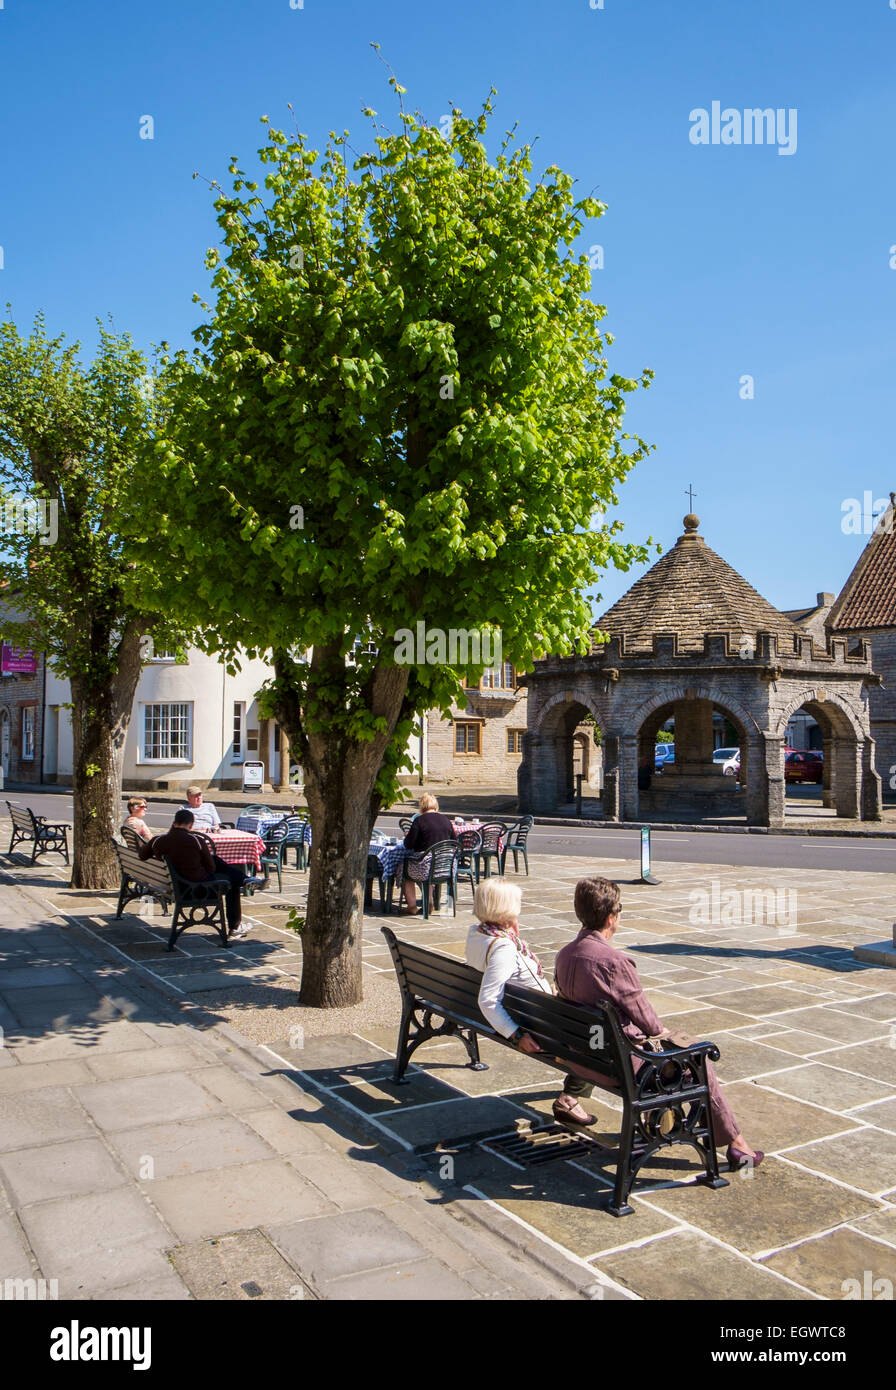 Somerton, une belle vieille petite ville de marché dans le Somerset, England, UK avec croix du marché et des gens assis sur un banc Banque D'Images